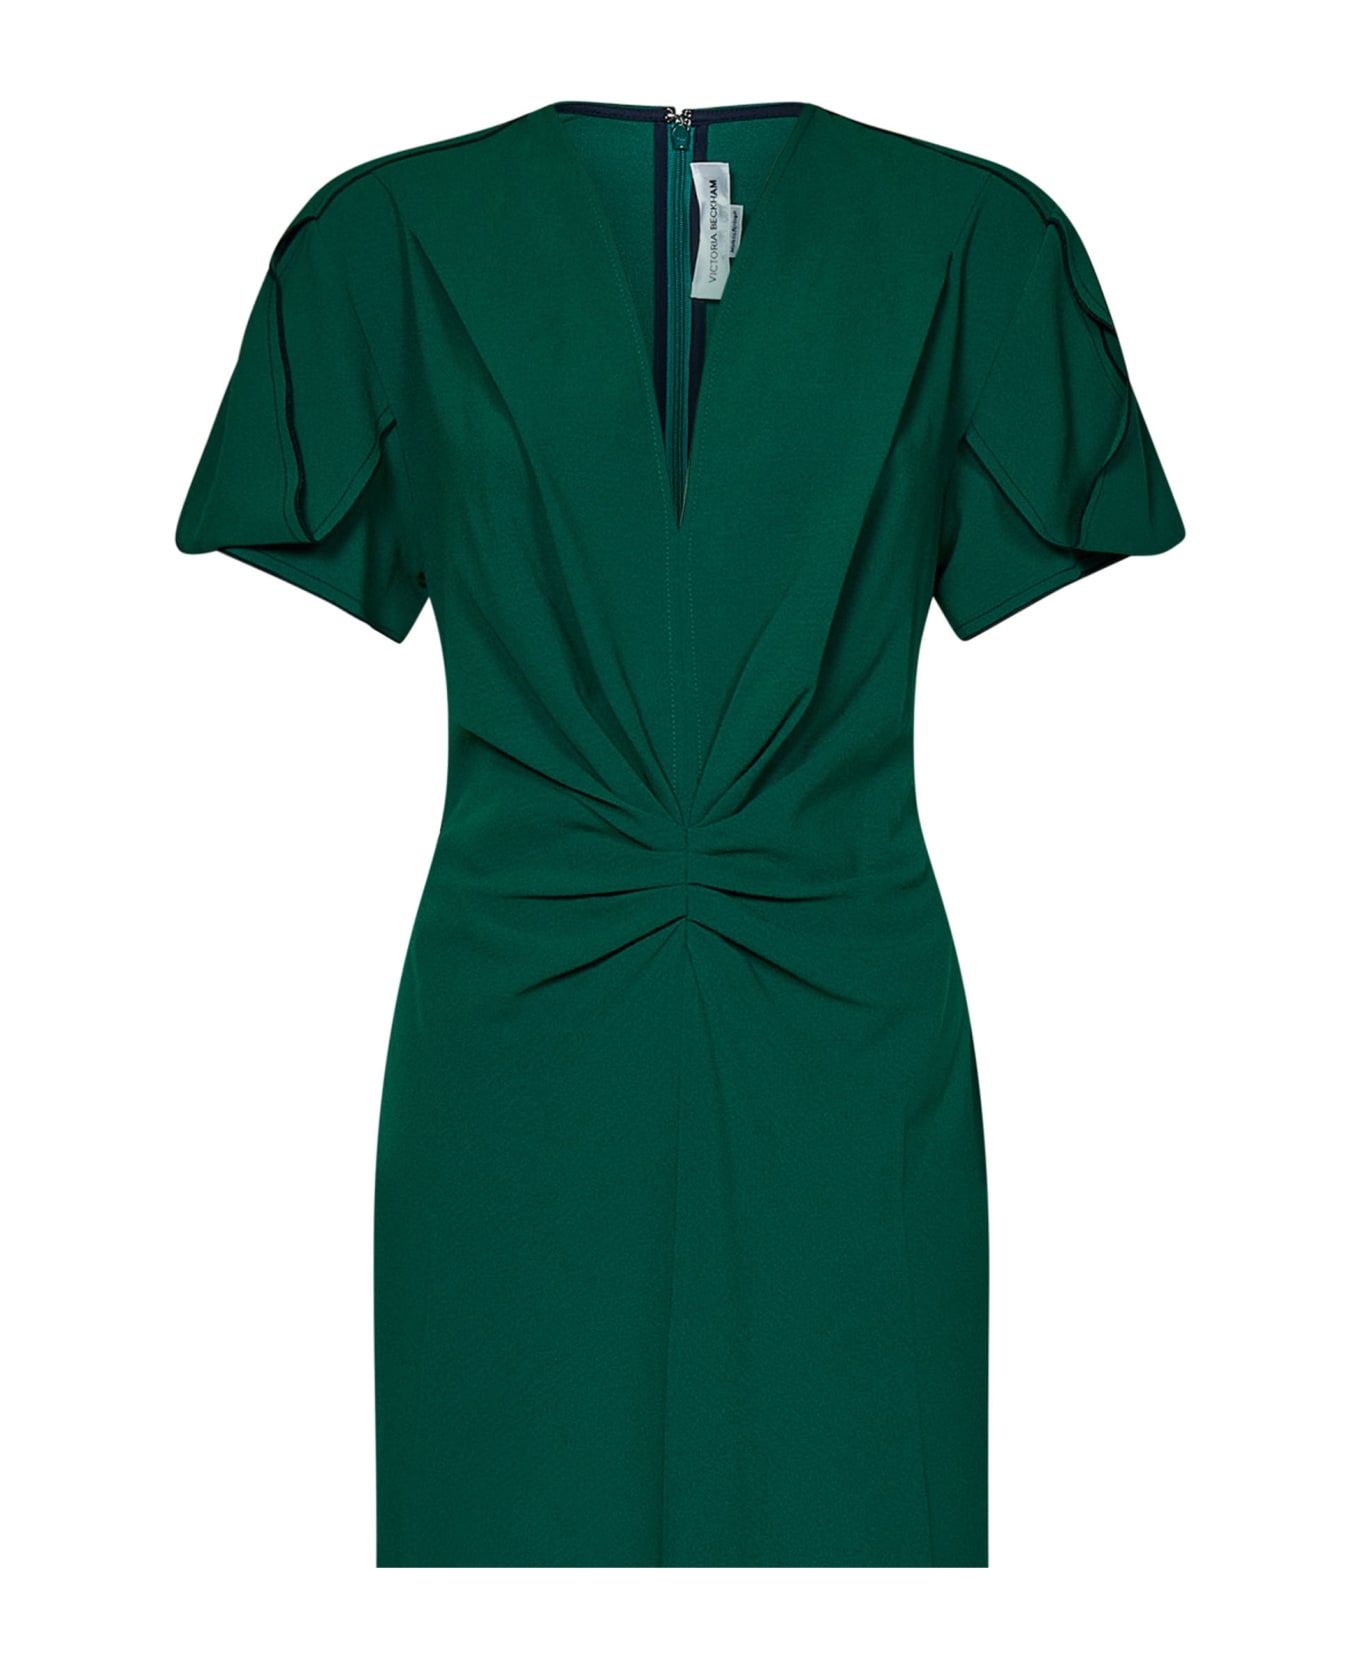 Victoria Beckham Dress - Green